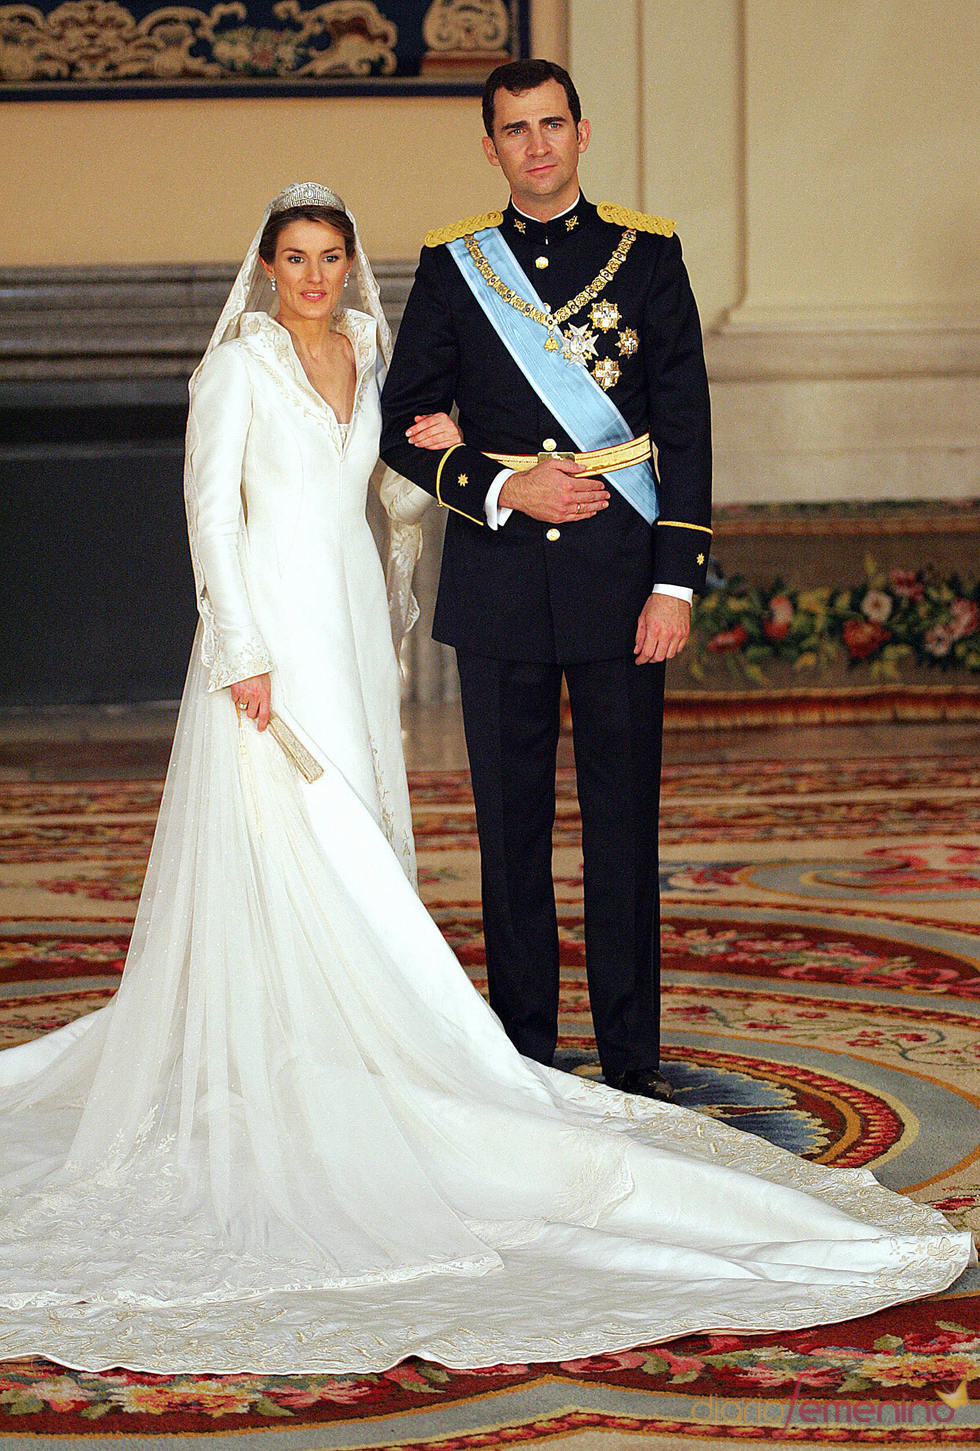 Foto oficial de la boda del Príncipe Felipe y Letizia Ortiz